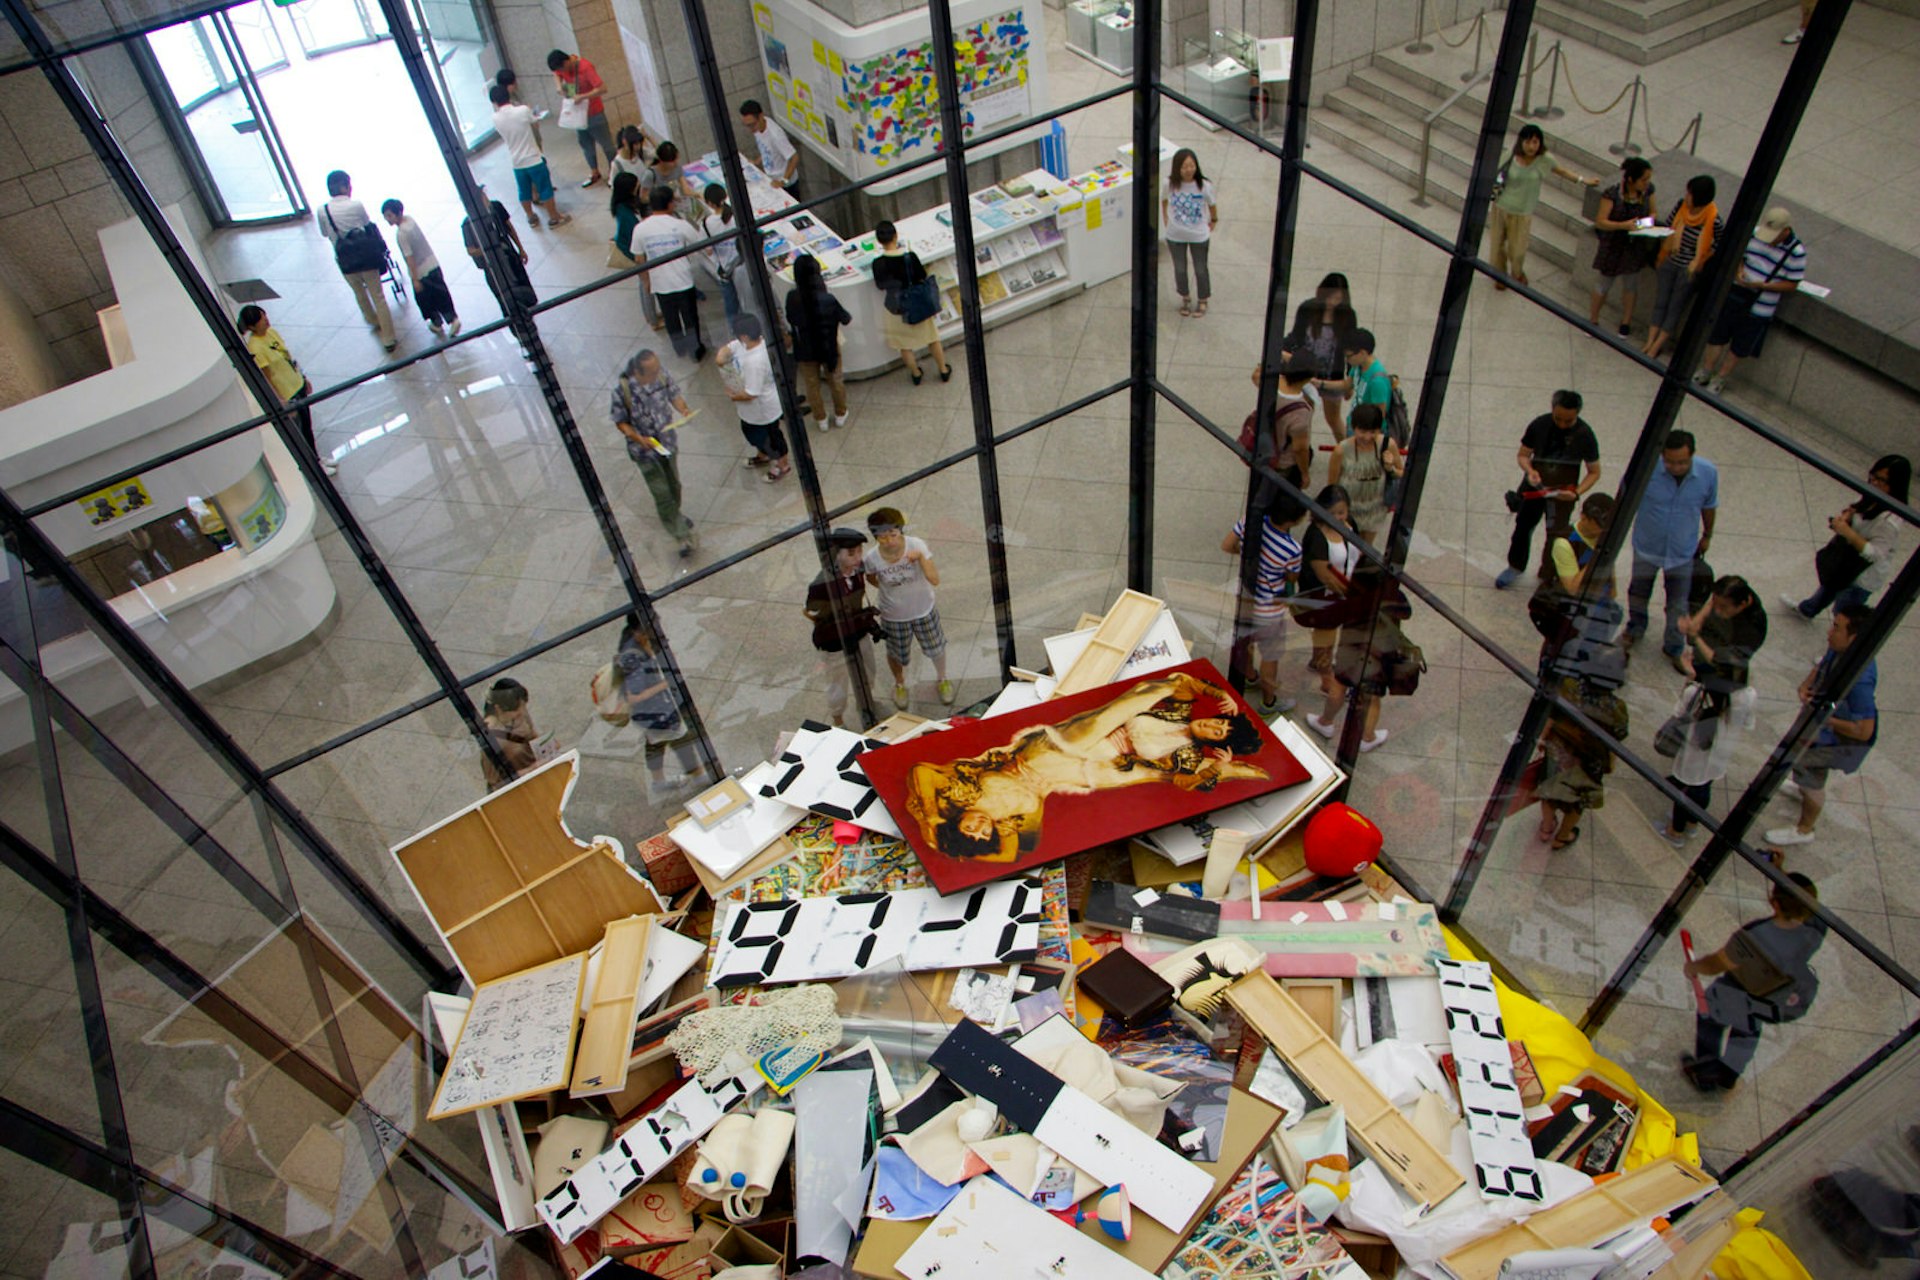 Art Bin (2010/2014) by Michael Landy, installation in the 2014 Yokohama Triennale